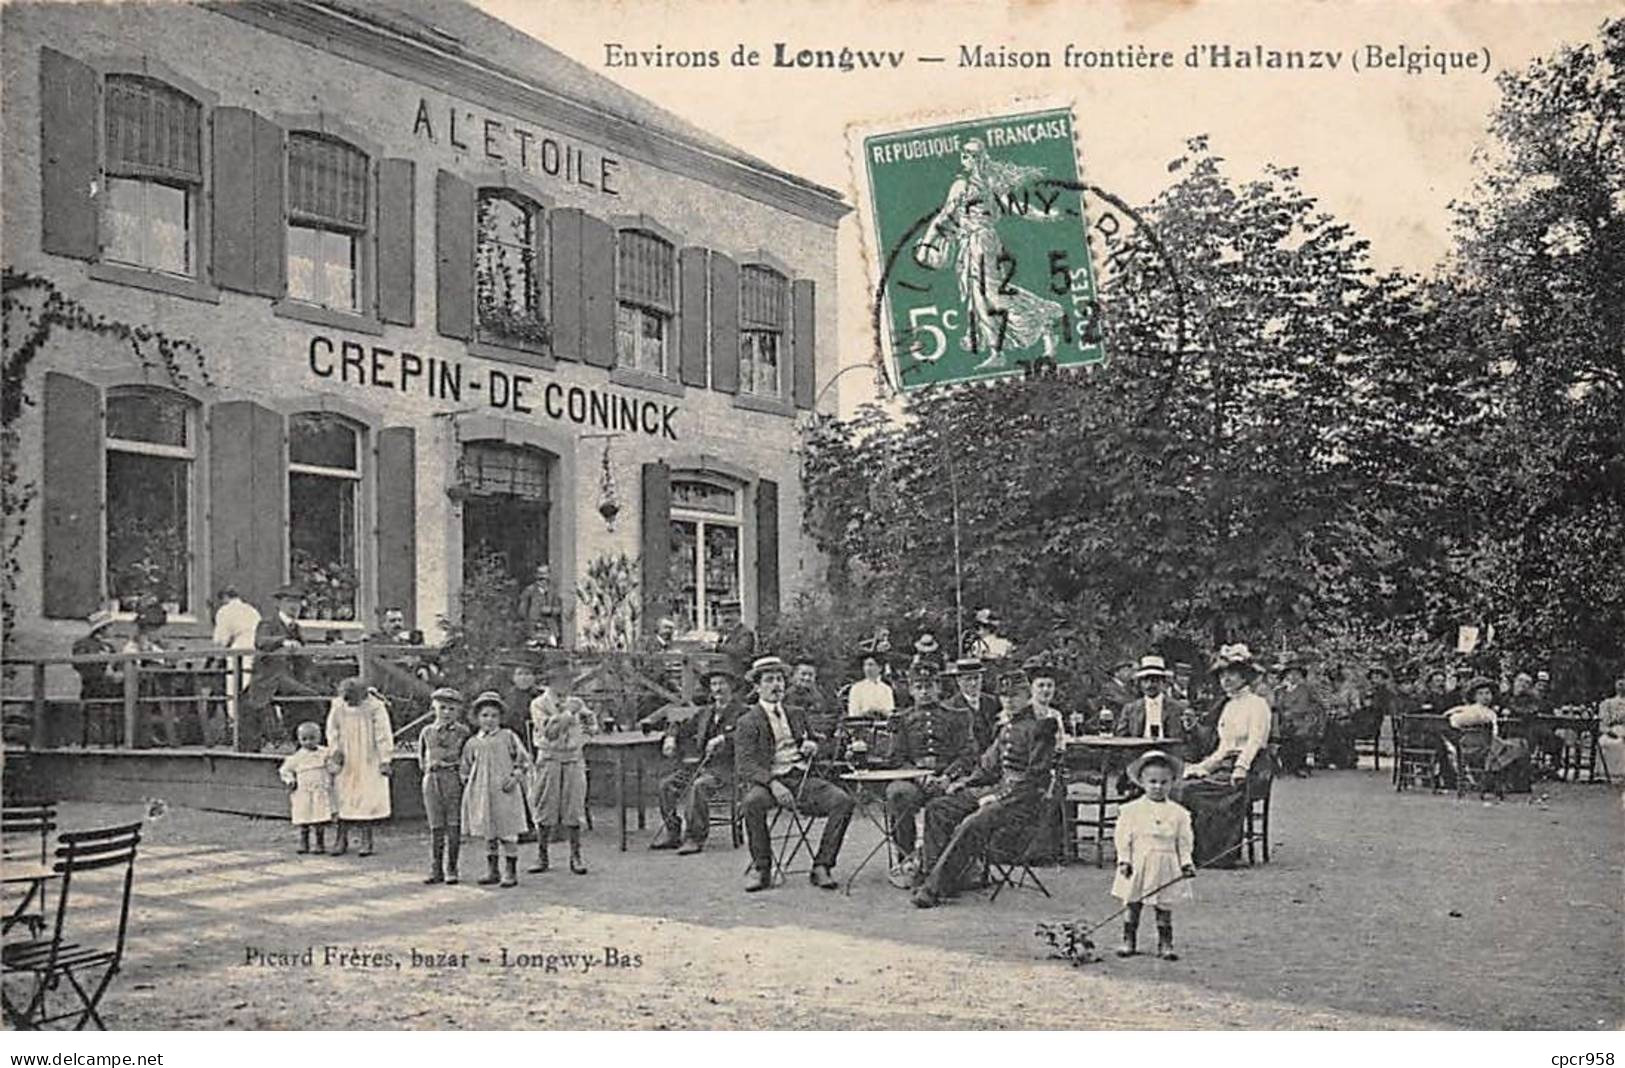 Belgique - N°80076 - Environs De LONGWY - Maison Frontière D'HALANZY - A L'Etoile Crepin-de-Coninck - Aubange